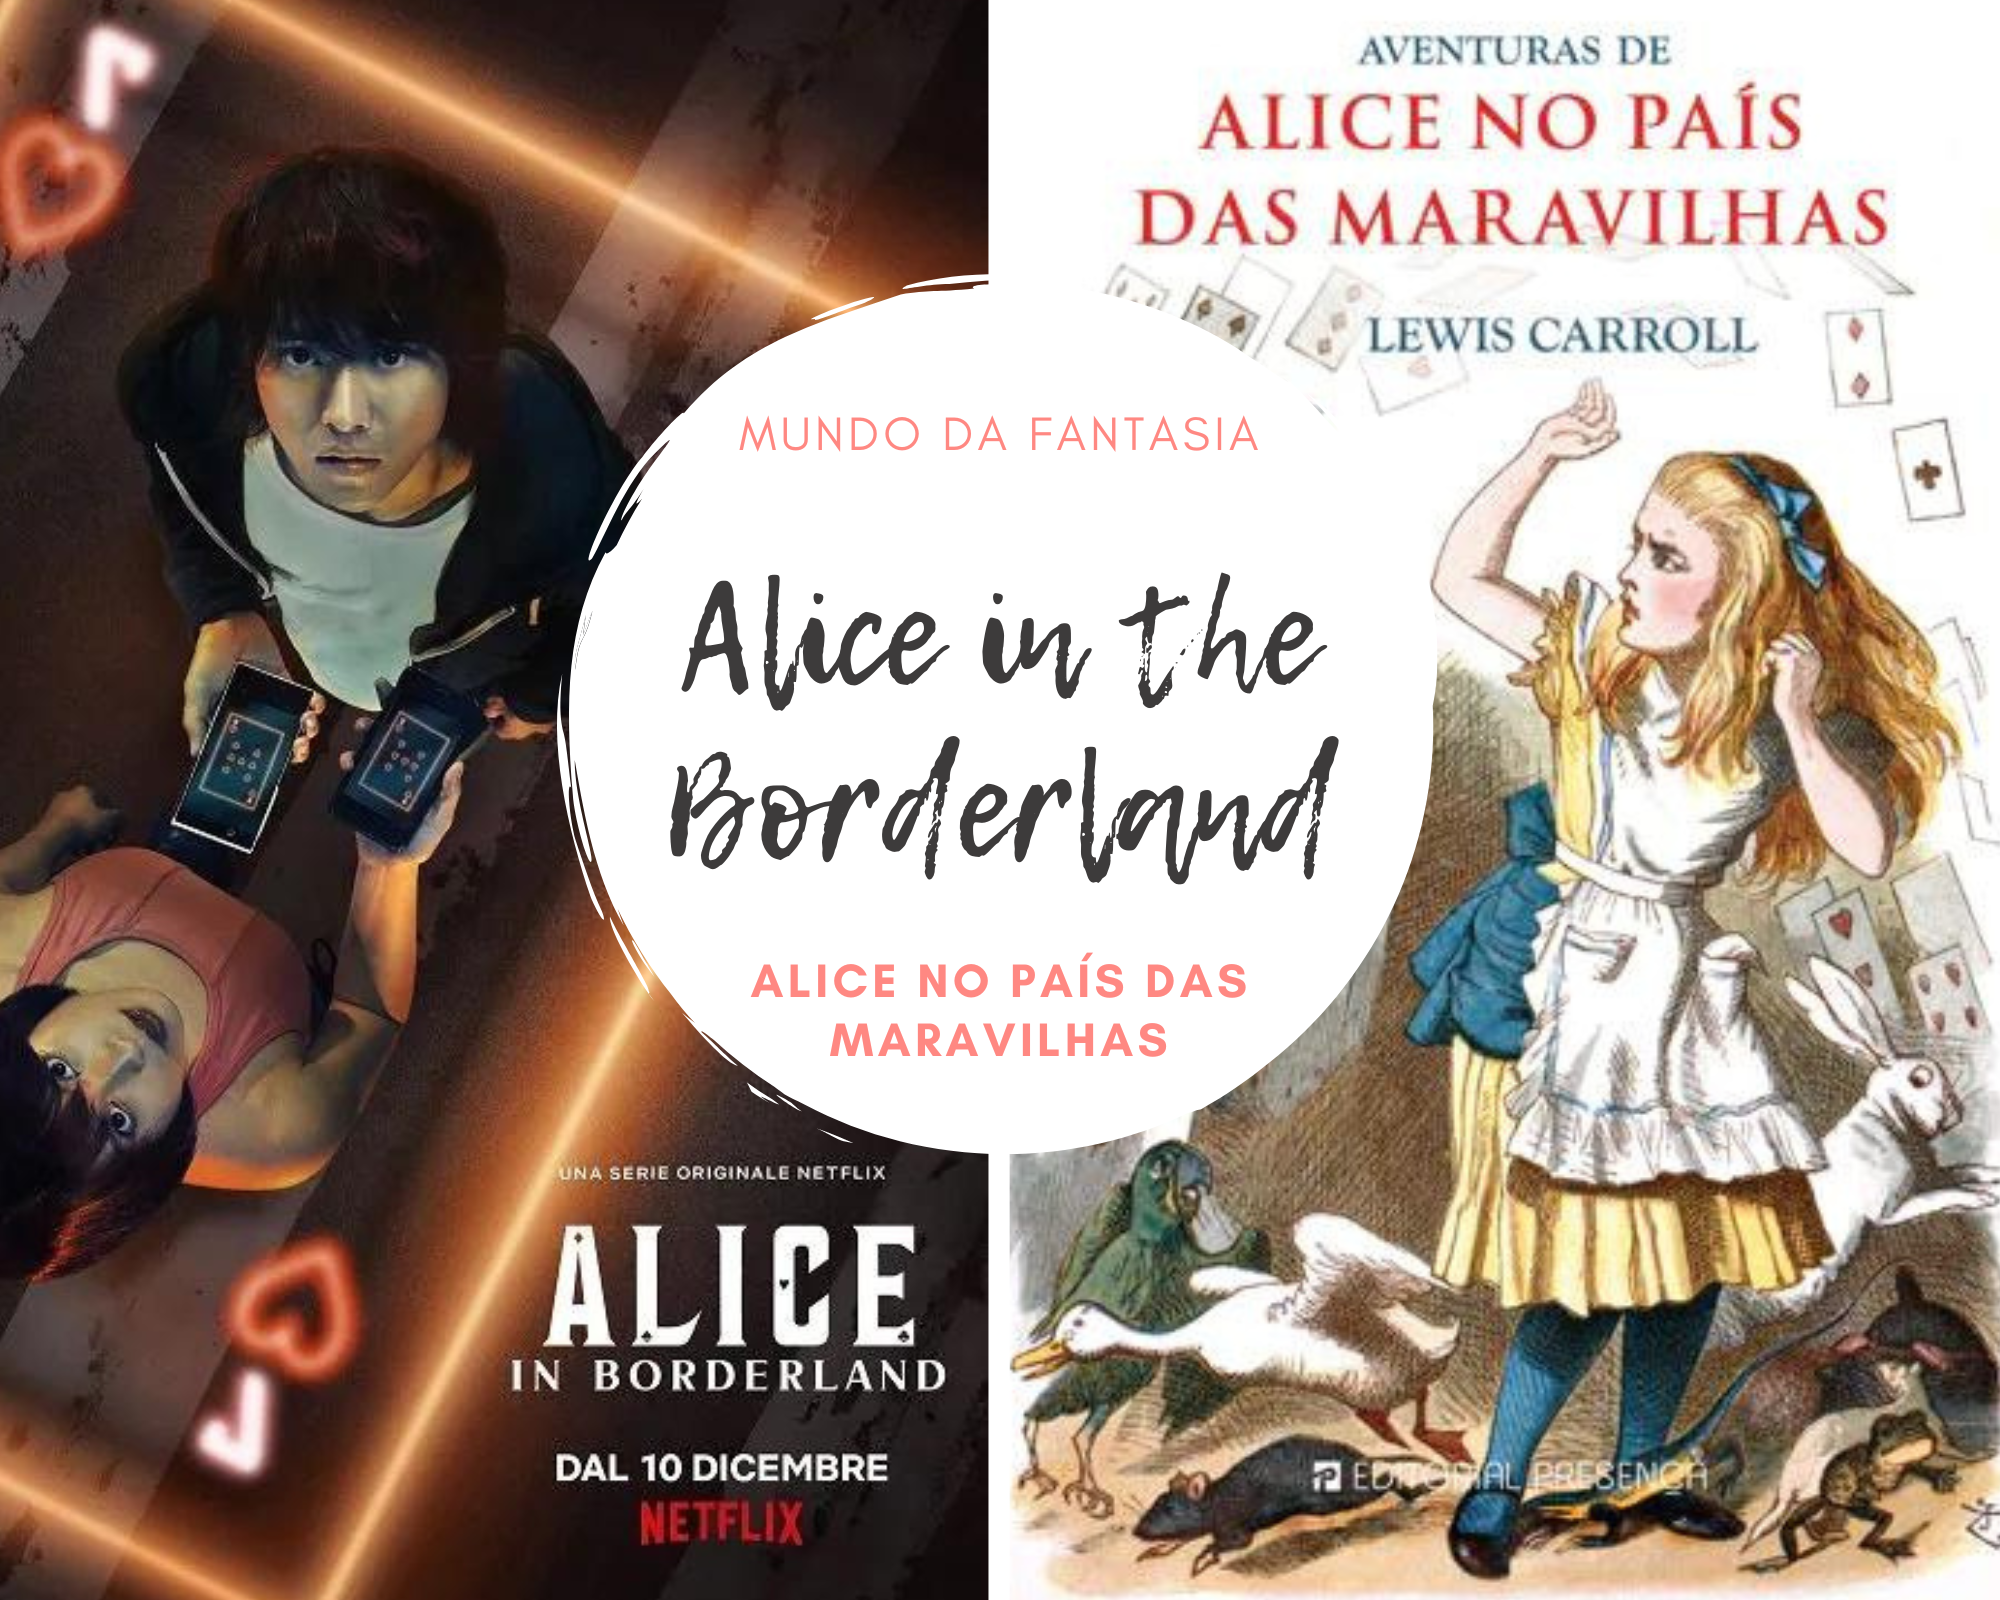 Alice in Borderland: 7 referências escondidas a Alice no País das Maravilhas